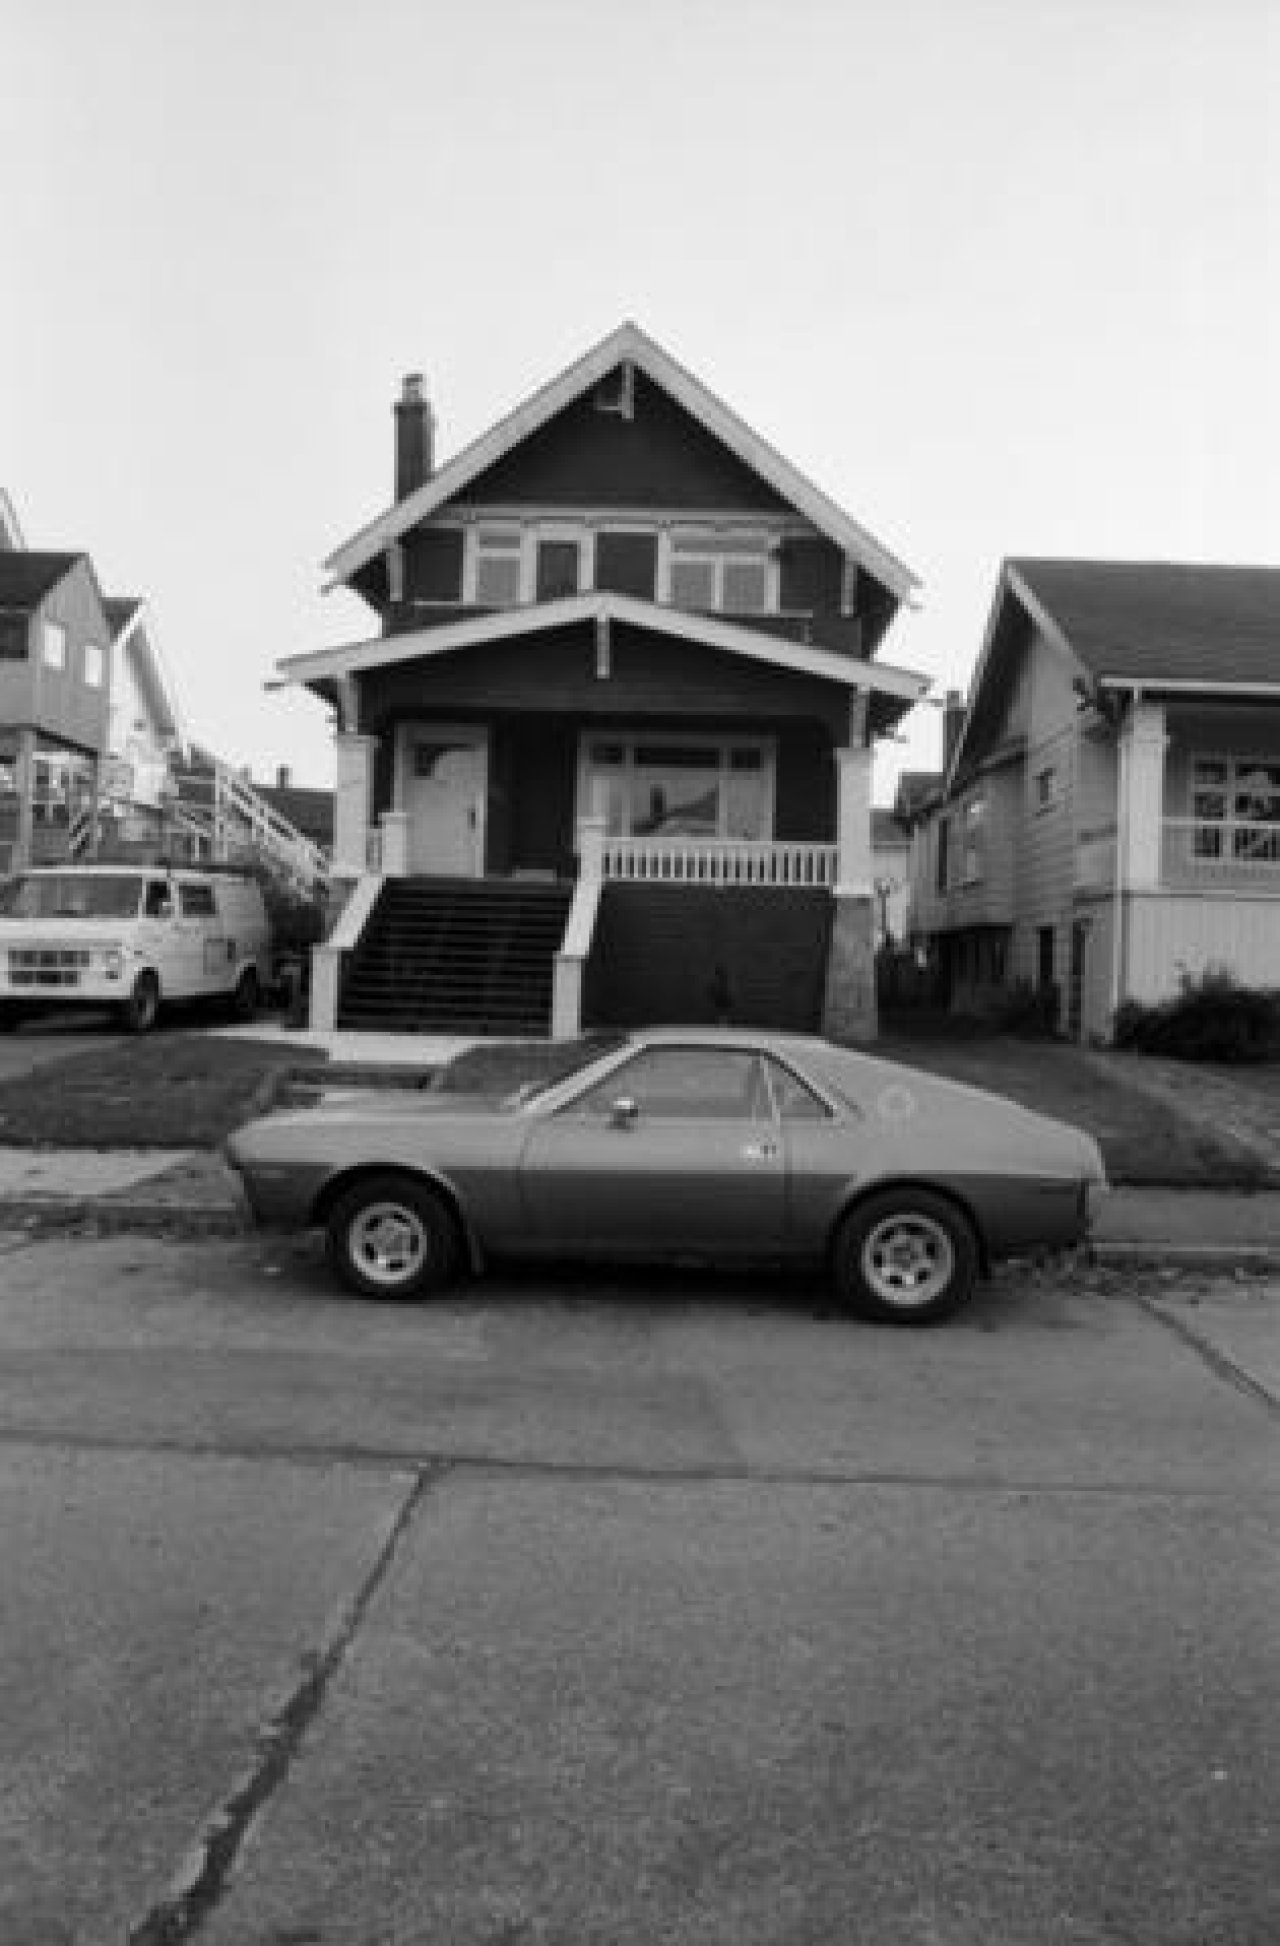 2982 West 3rd Avenue c. 1985

Source: City of Vancouver Archives Item : CVA 790-1559 - 2982 West 3rd Avenue